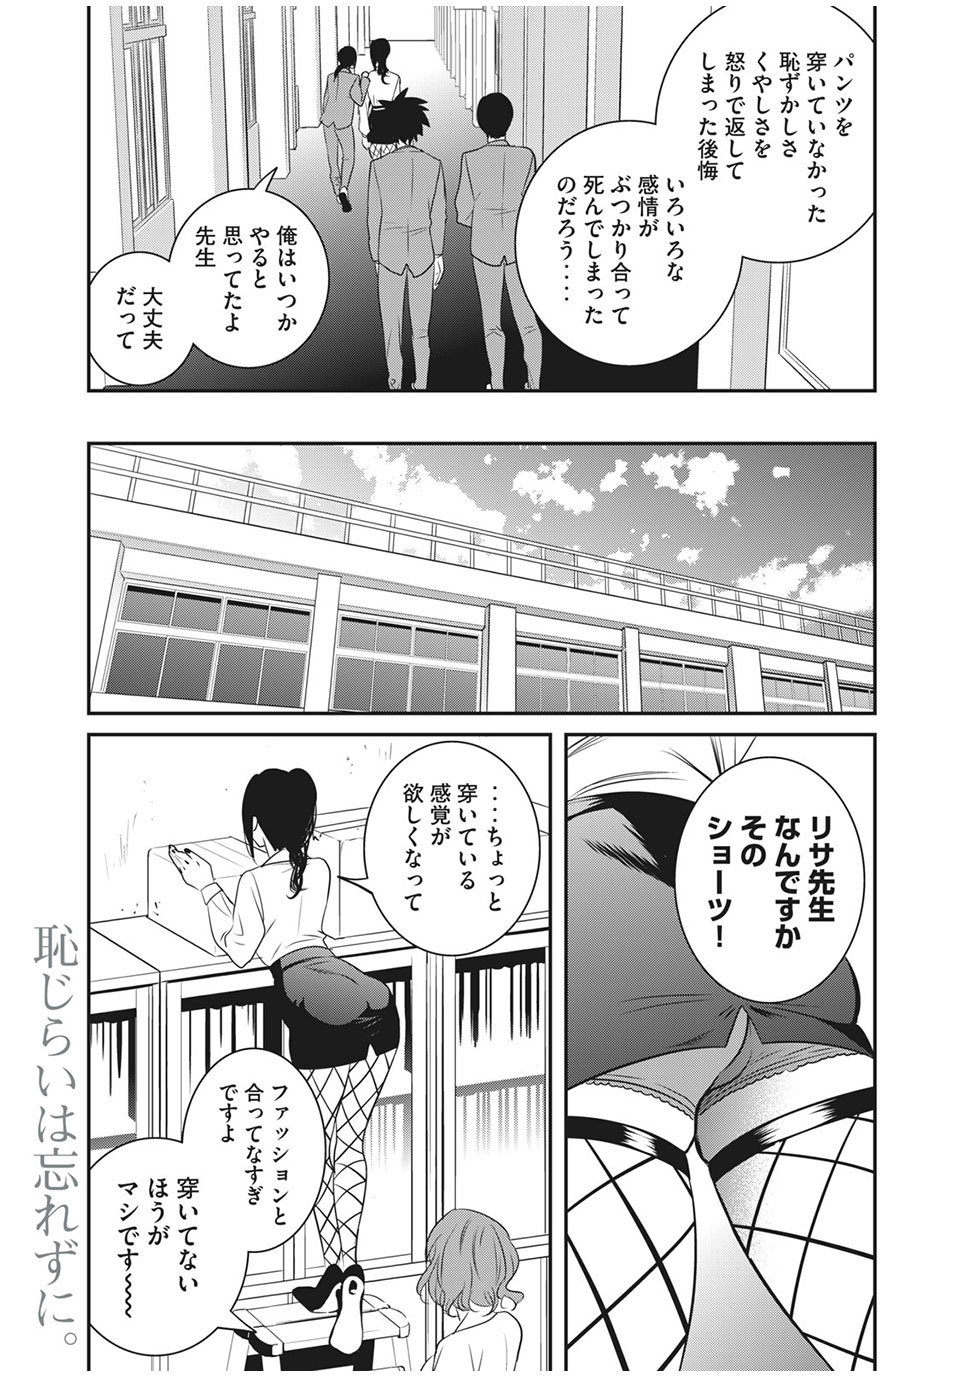 Eigo ×× Sensei - Chapter 23 - Page 13